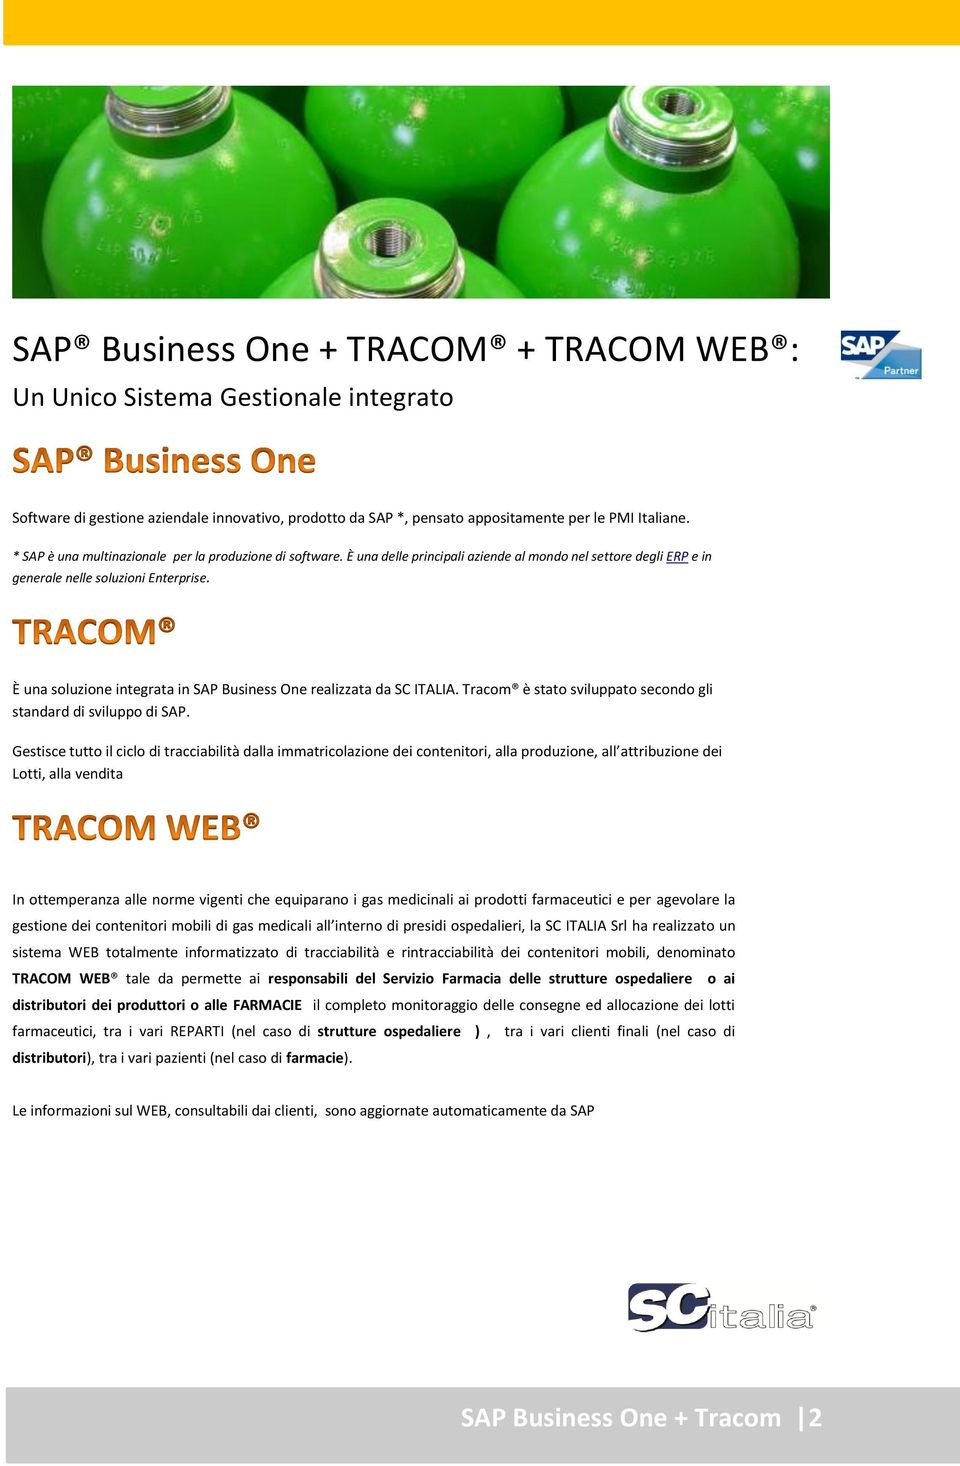 È una soluzione integrata in SAP Business One realizzata da SC ITALIA. Tracom è stato sviluppato secondo gli standard di sviluppo di SAP.